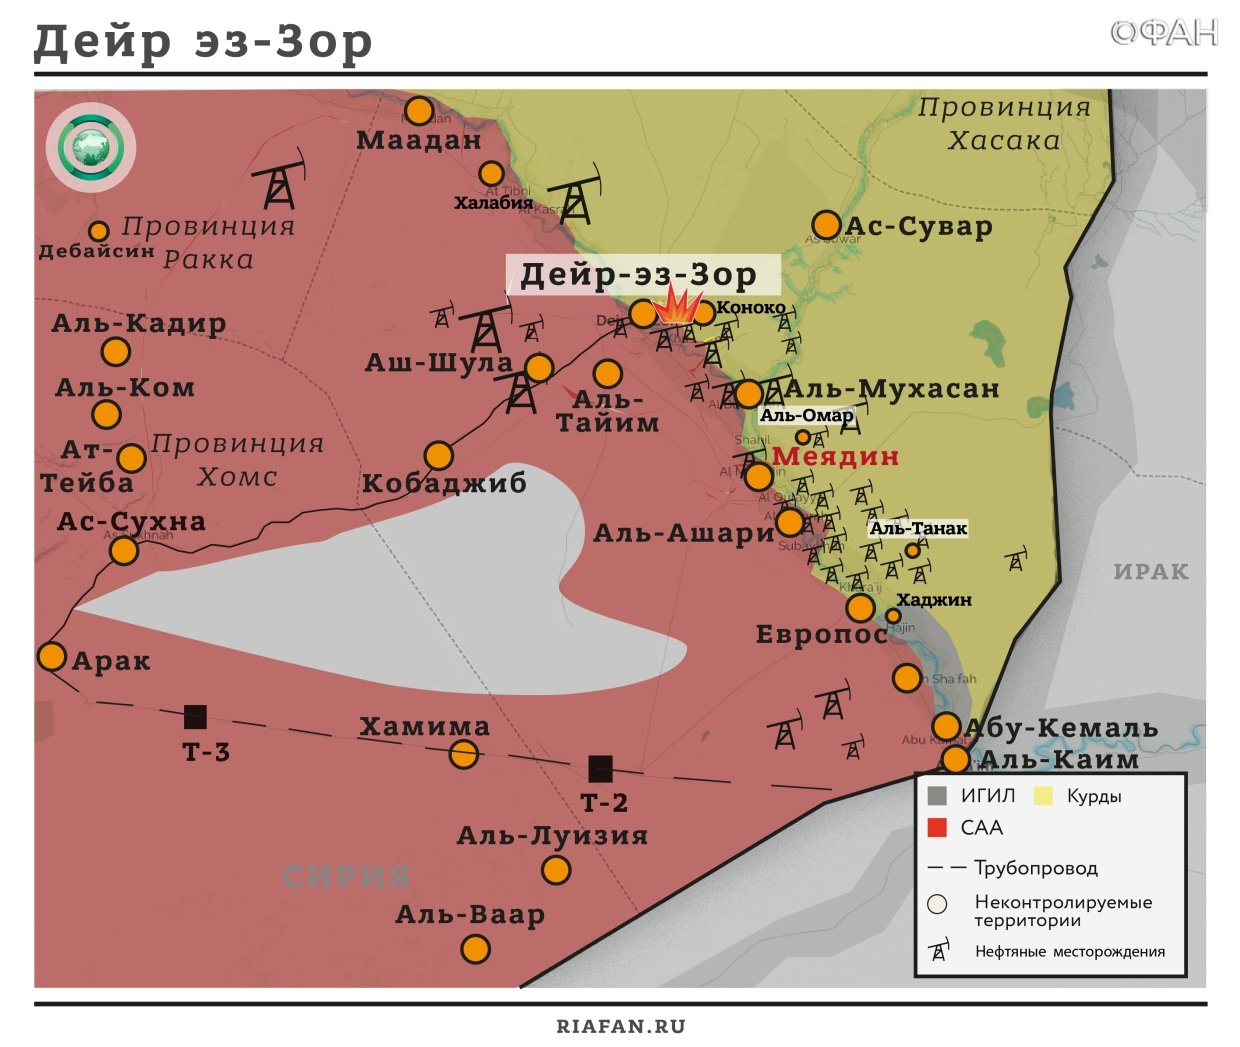 Сирия новости 24 октября 07.00: США могут перебросить боевиков из Ат-Танфа в Дейр-эз-Зор; в Идлибе продолжается противостояние группировок